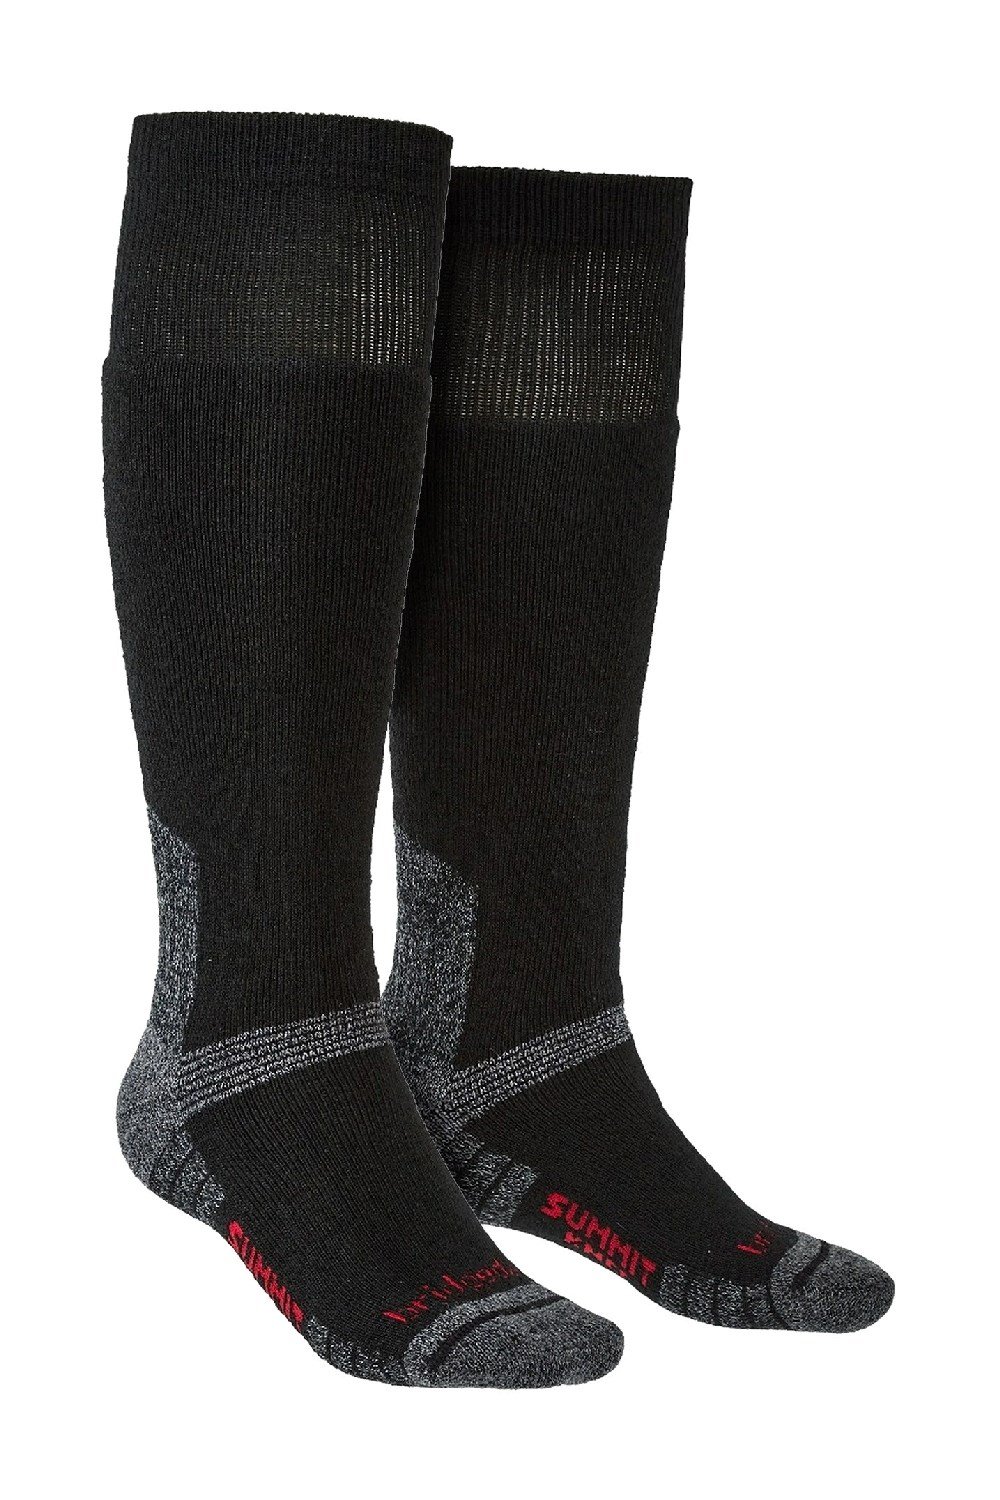 Mens Outdoor Merino Socks -